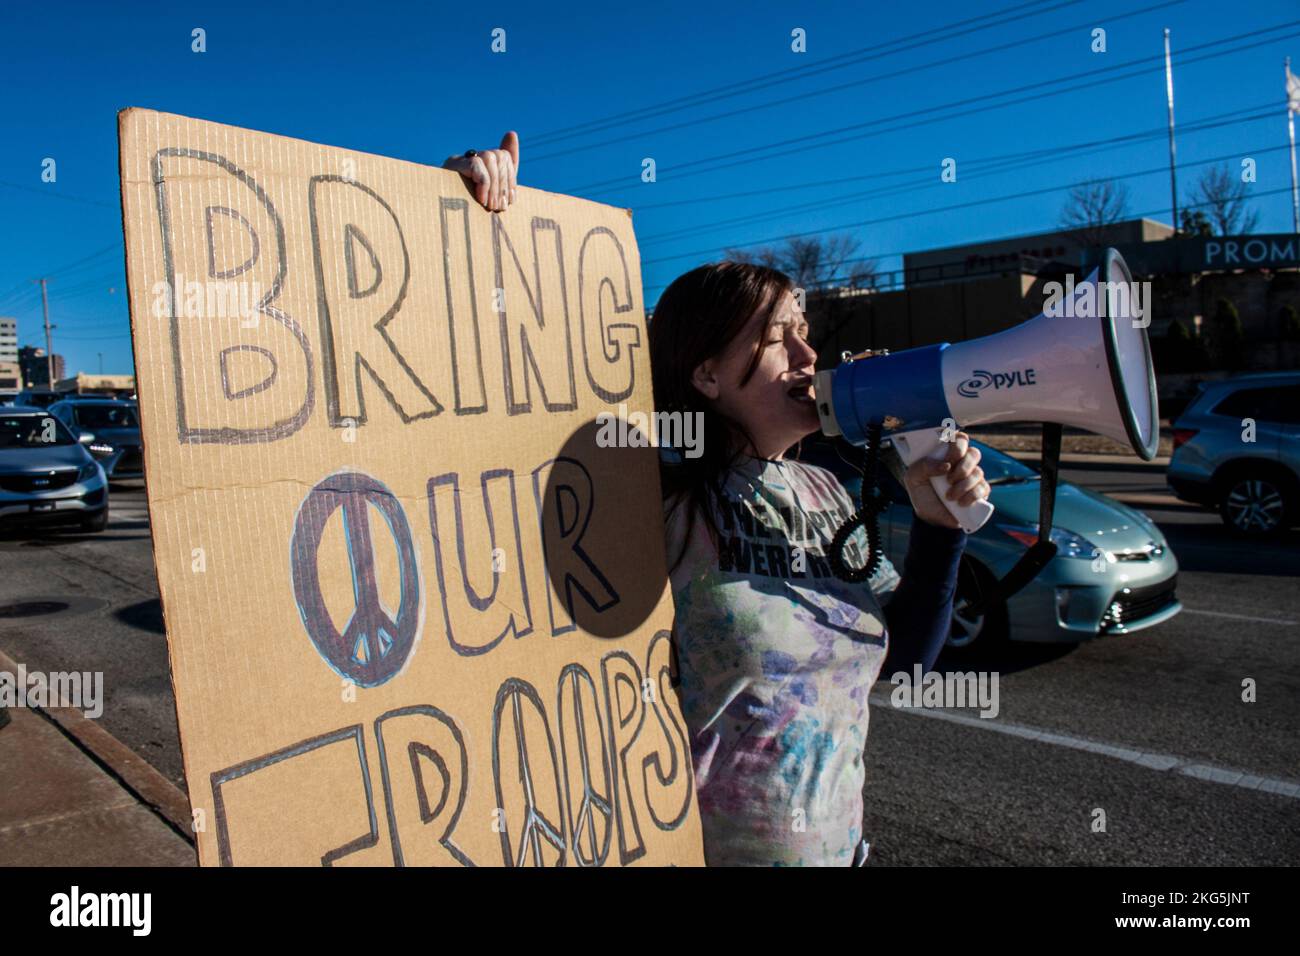 01-04-2020 Tulsa USA Potestor mit Megafon und großem selbstgemachten Schild mit der Aufschrift "Bring unsere Truppen nach Hause" an der Straßenecke Stockfoto